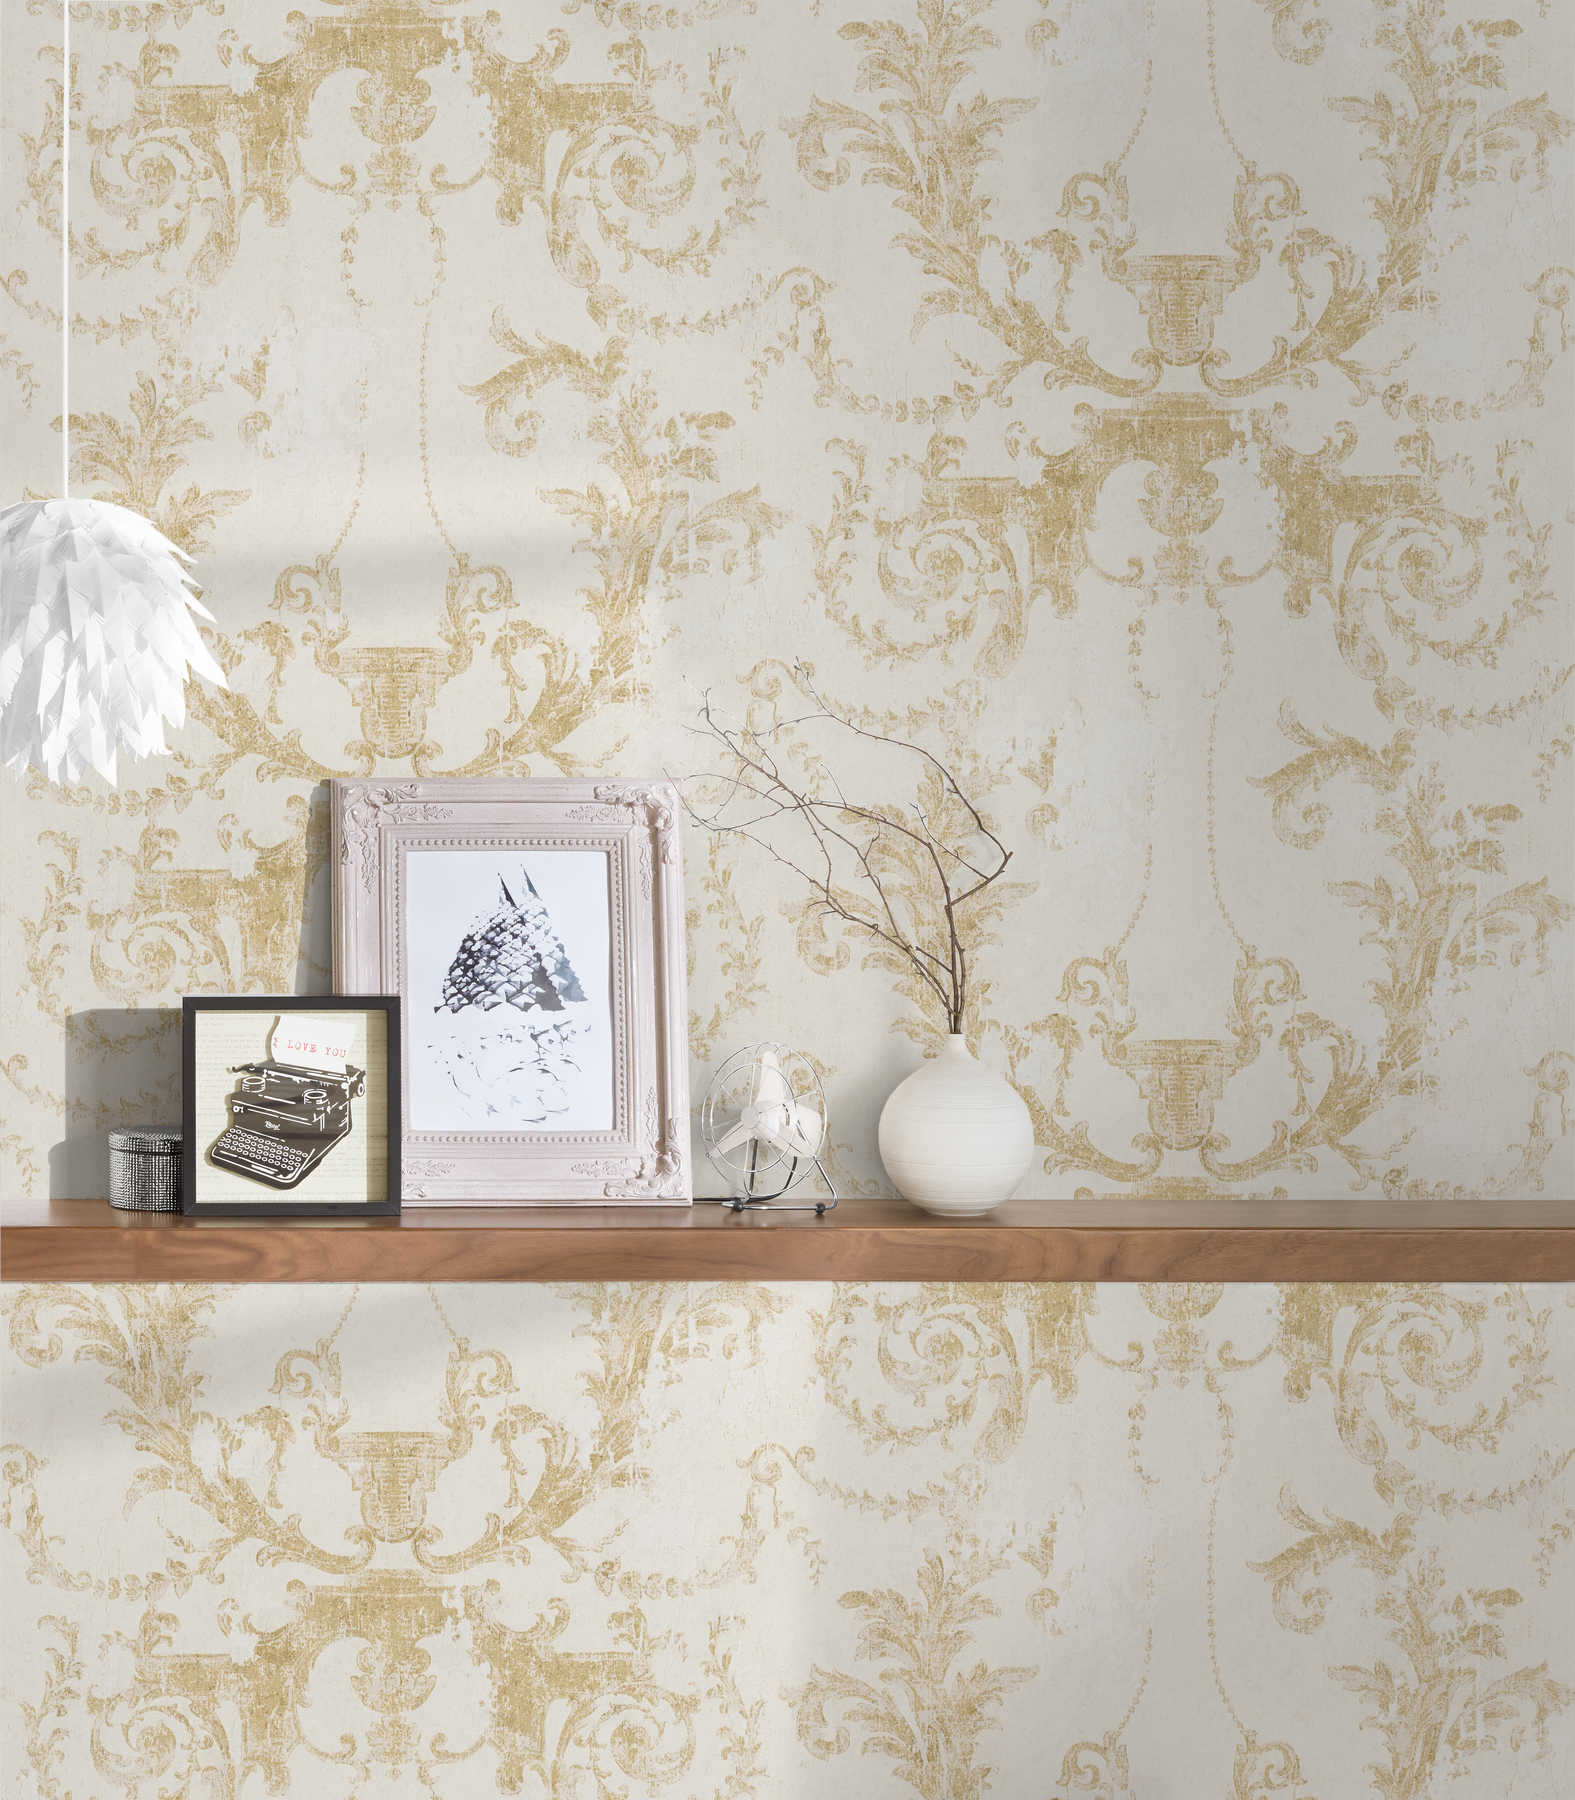             Ornamenteel behang vintage stijl & rustiek - goud, crème
        